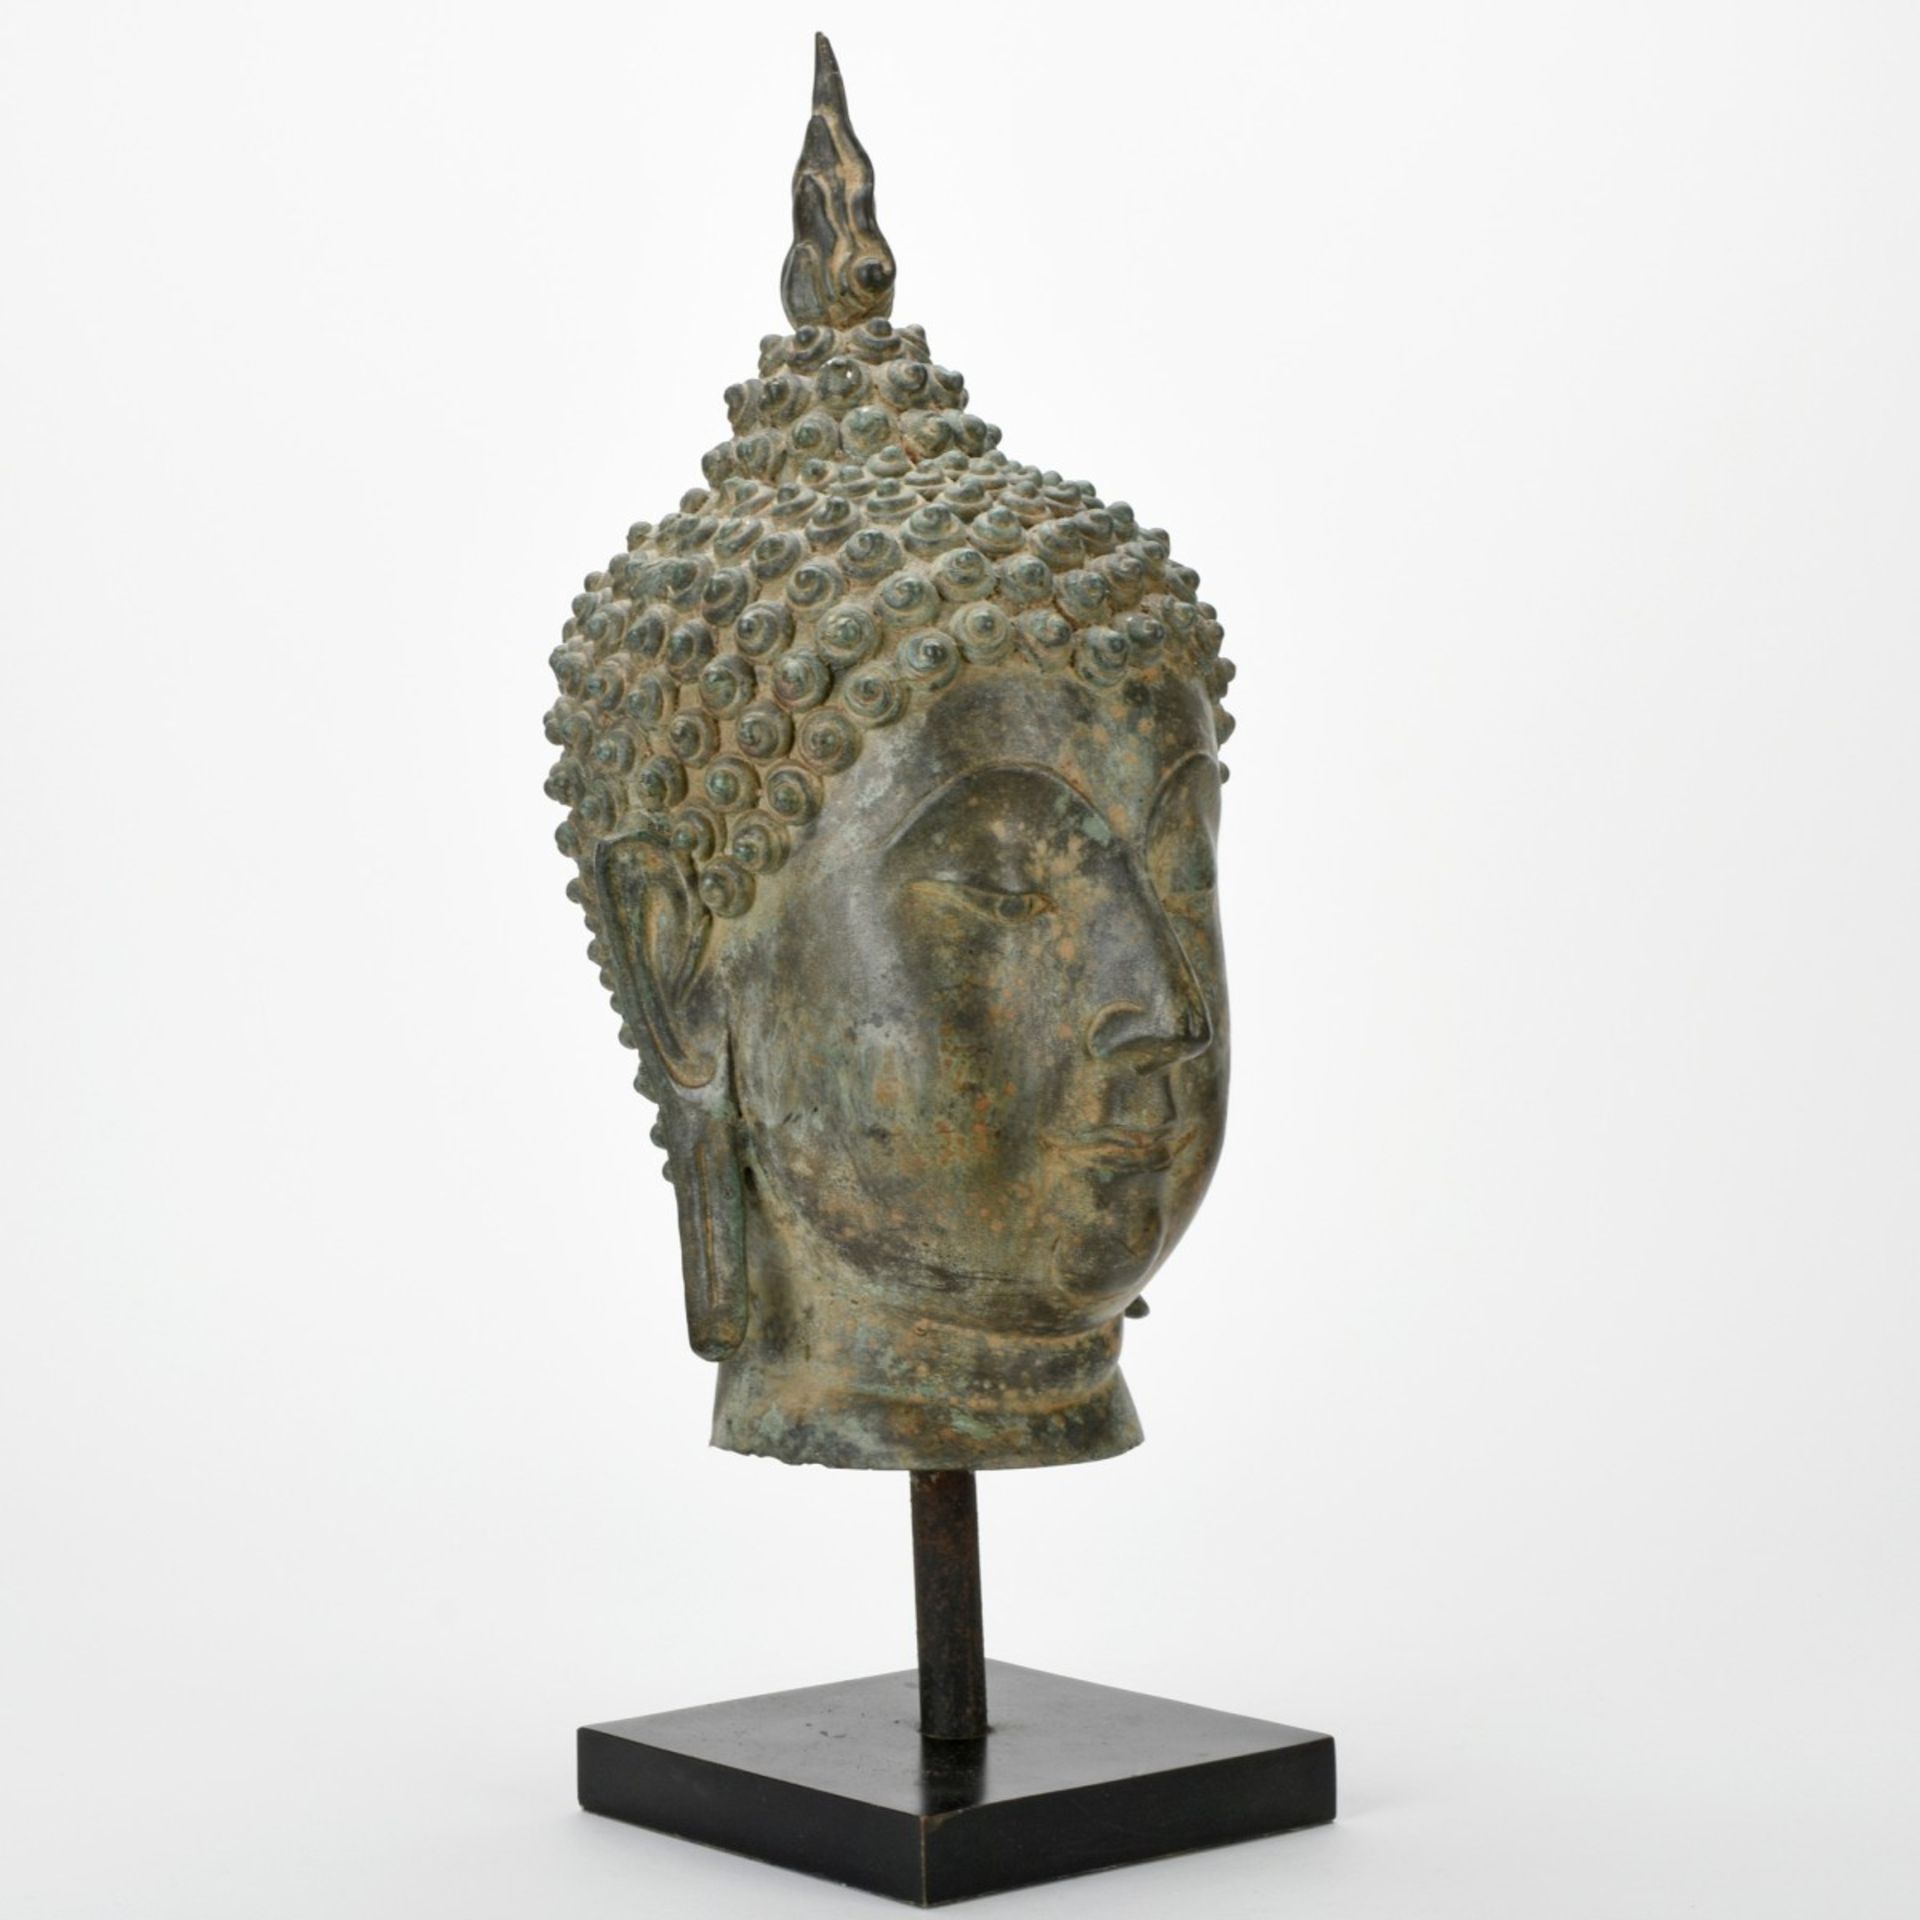 Buddhahaupt - Image 3 of 6